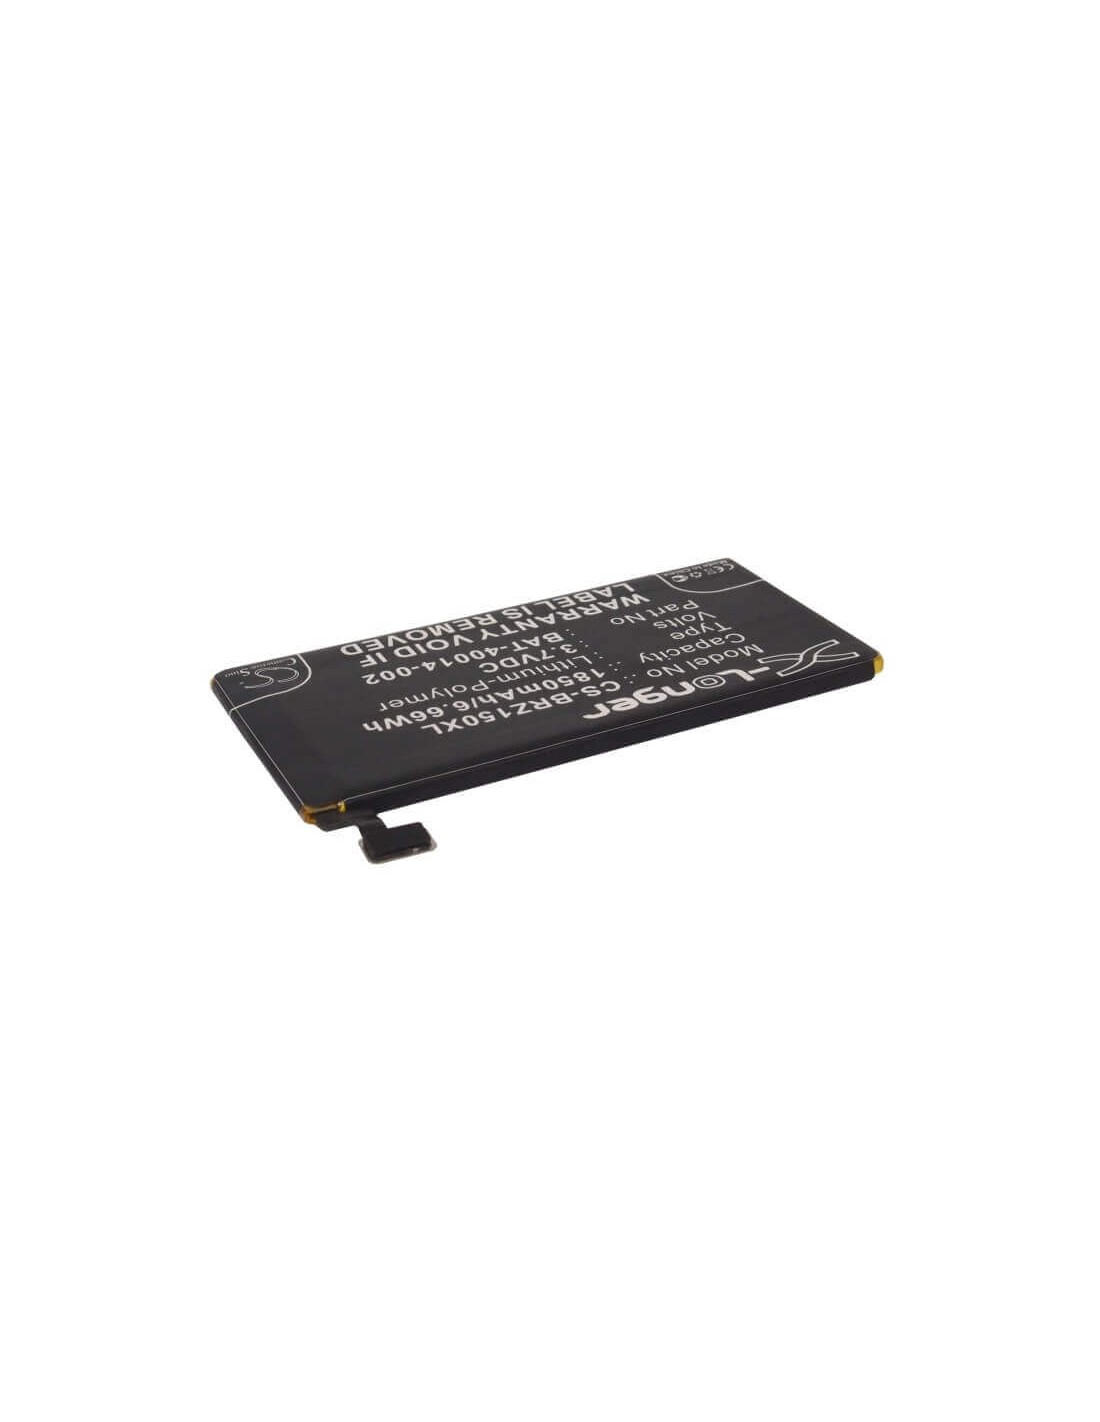 Battery for Blackberry Z15 3.7V, 1800mAh - 6.66Wh